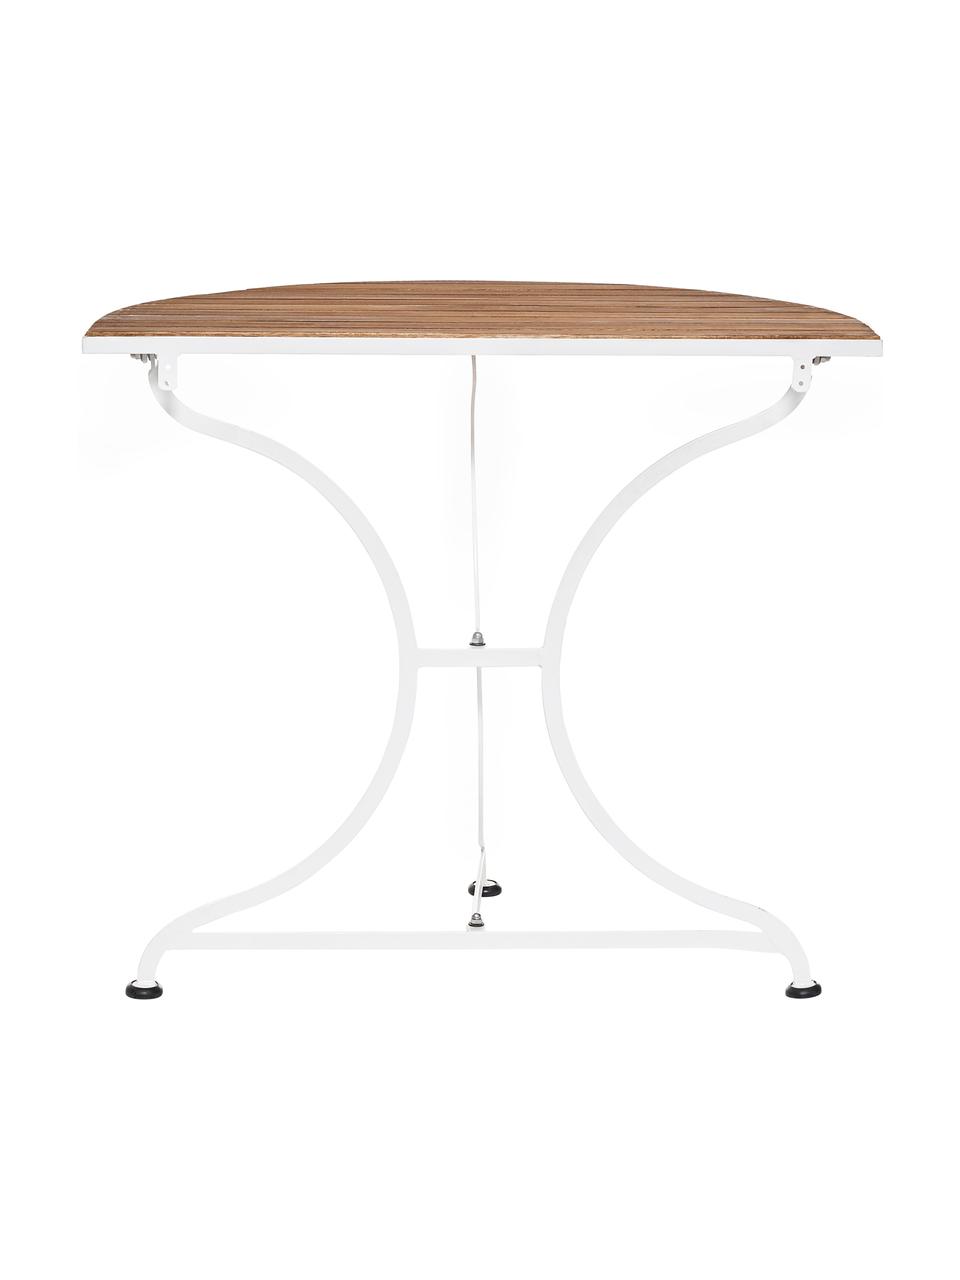 Půlkruhový balkonový stůl s dřevěnou deskou Parklife, Bílá, akátové dřevo